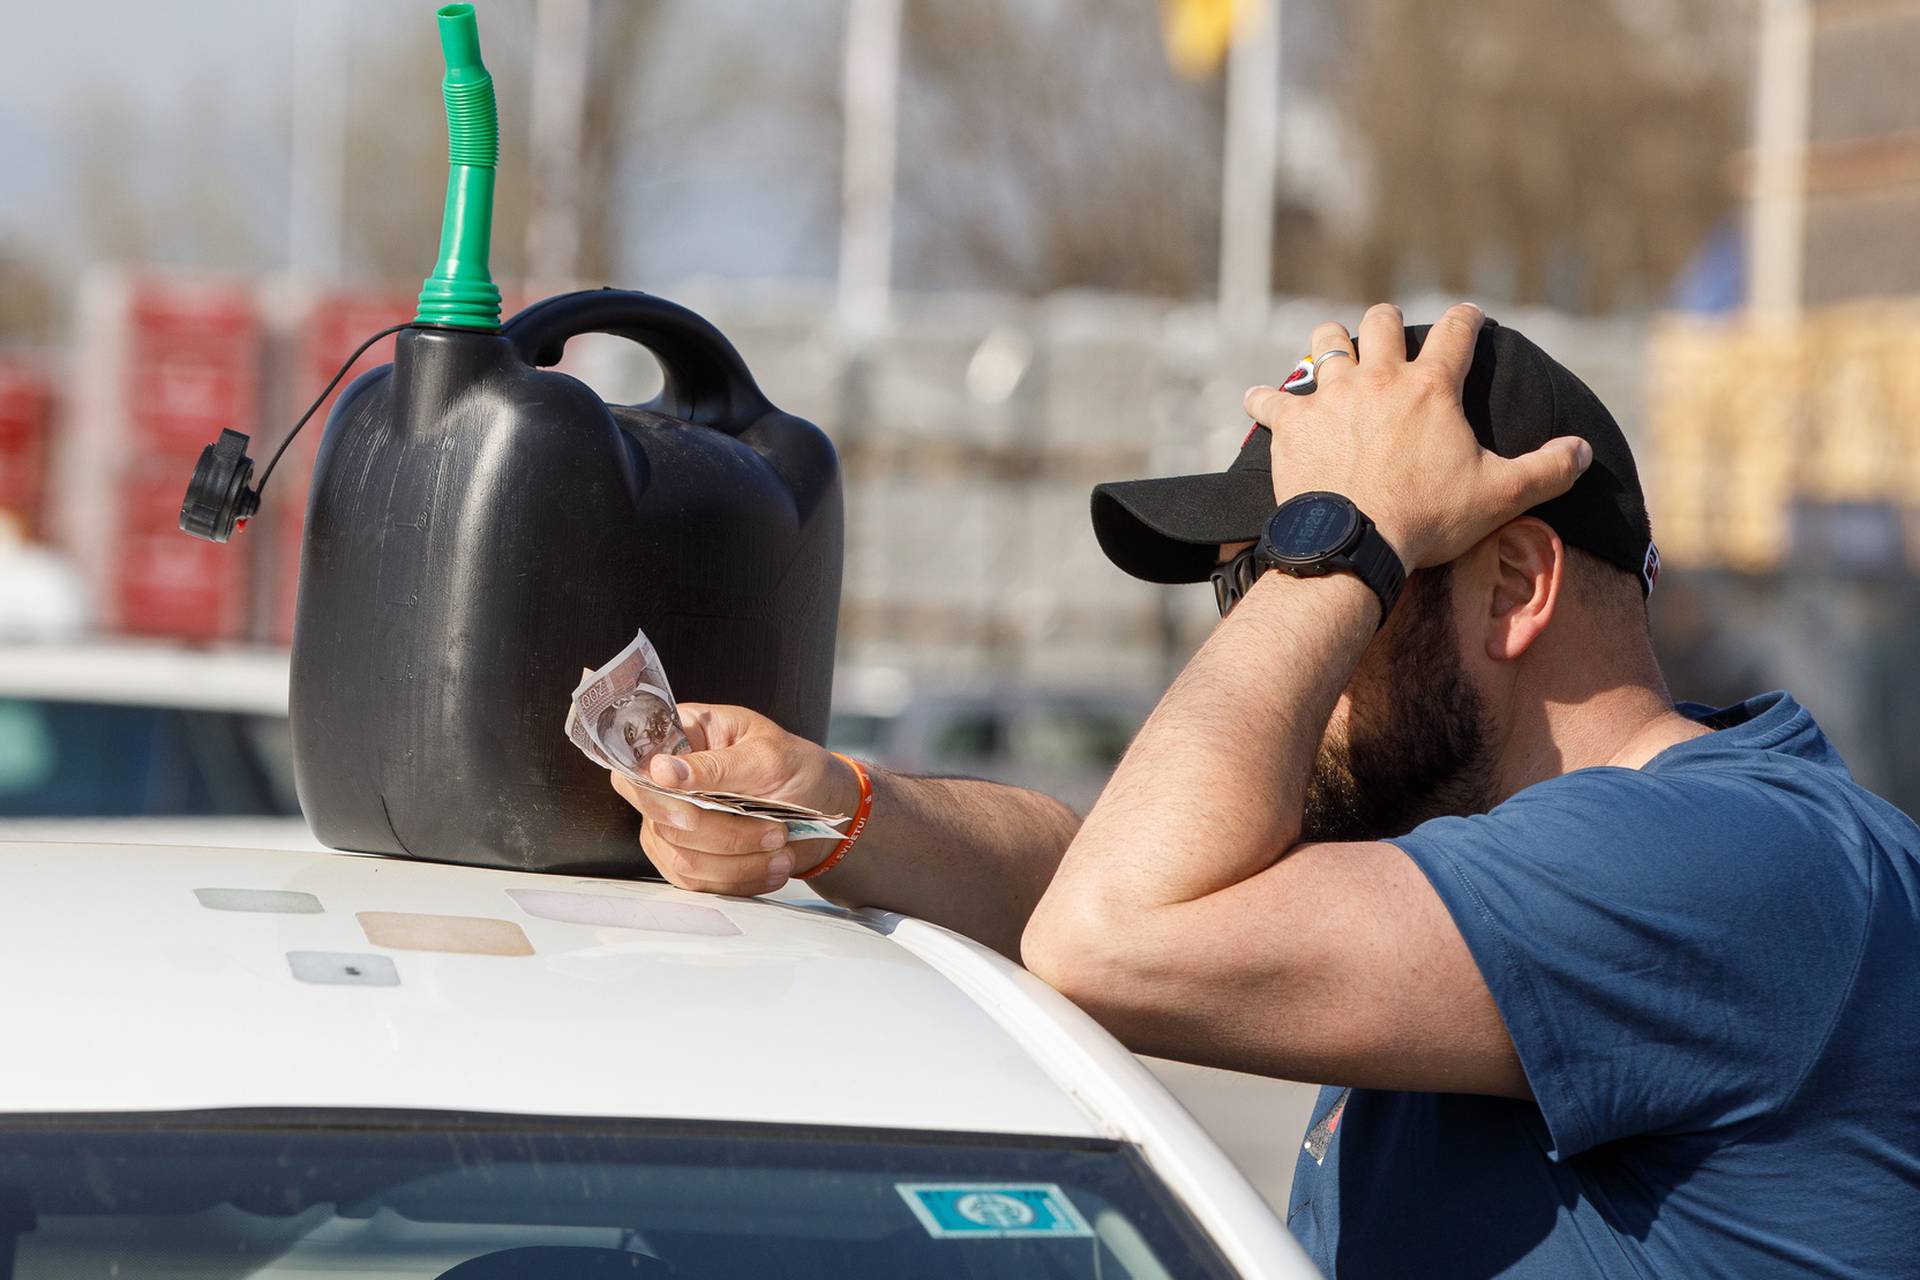 FOTO Ovo su nove cijene goriva: Benzin poskupio, dizel jeftiniji